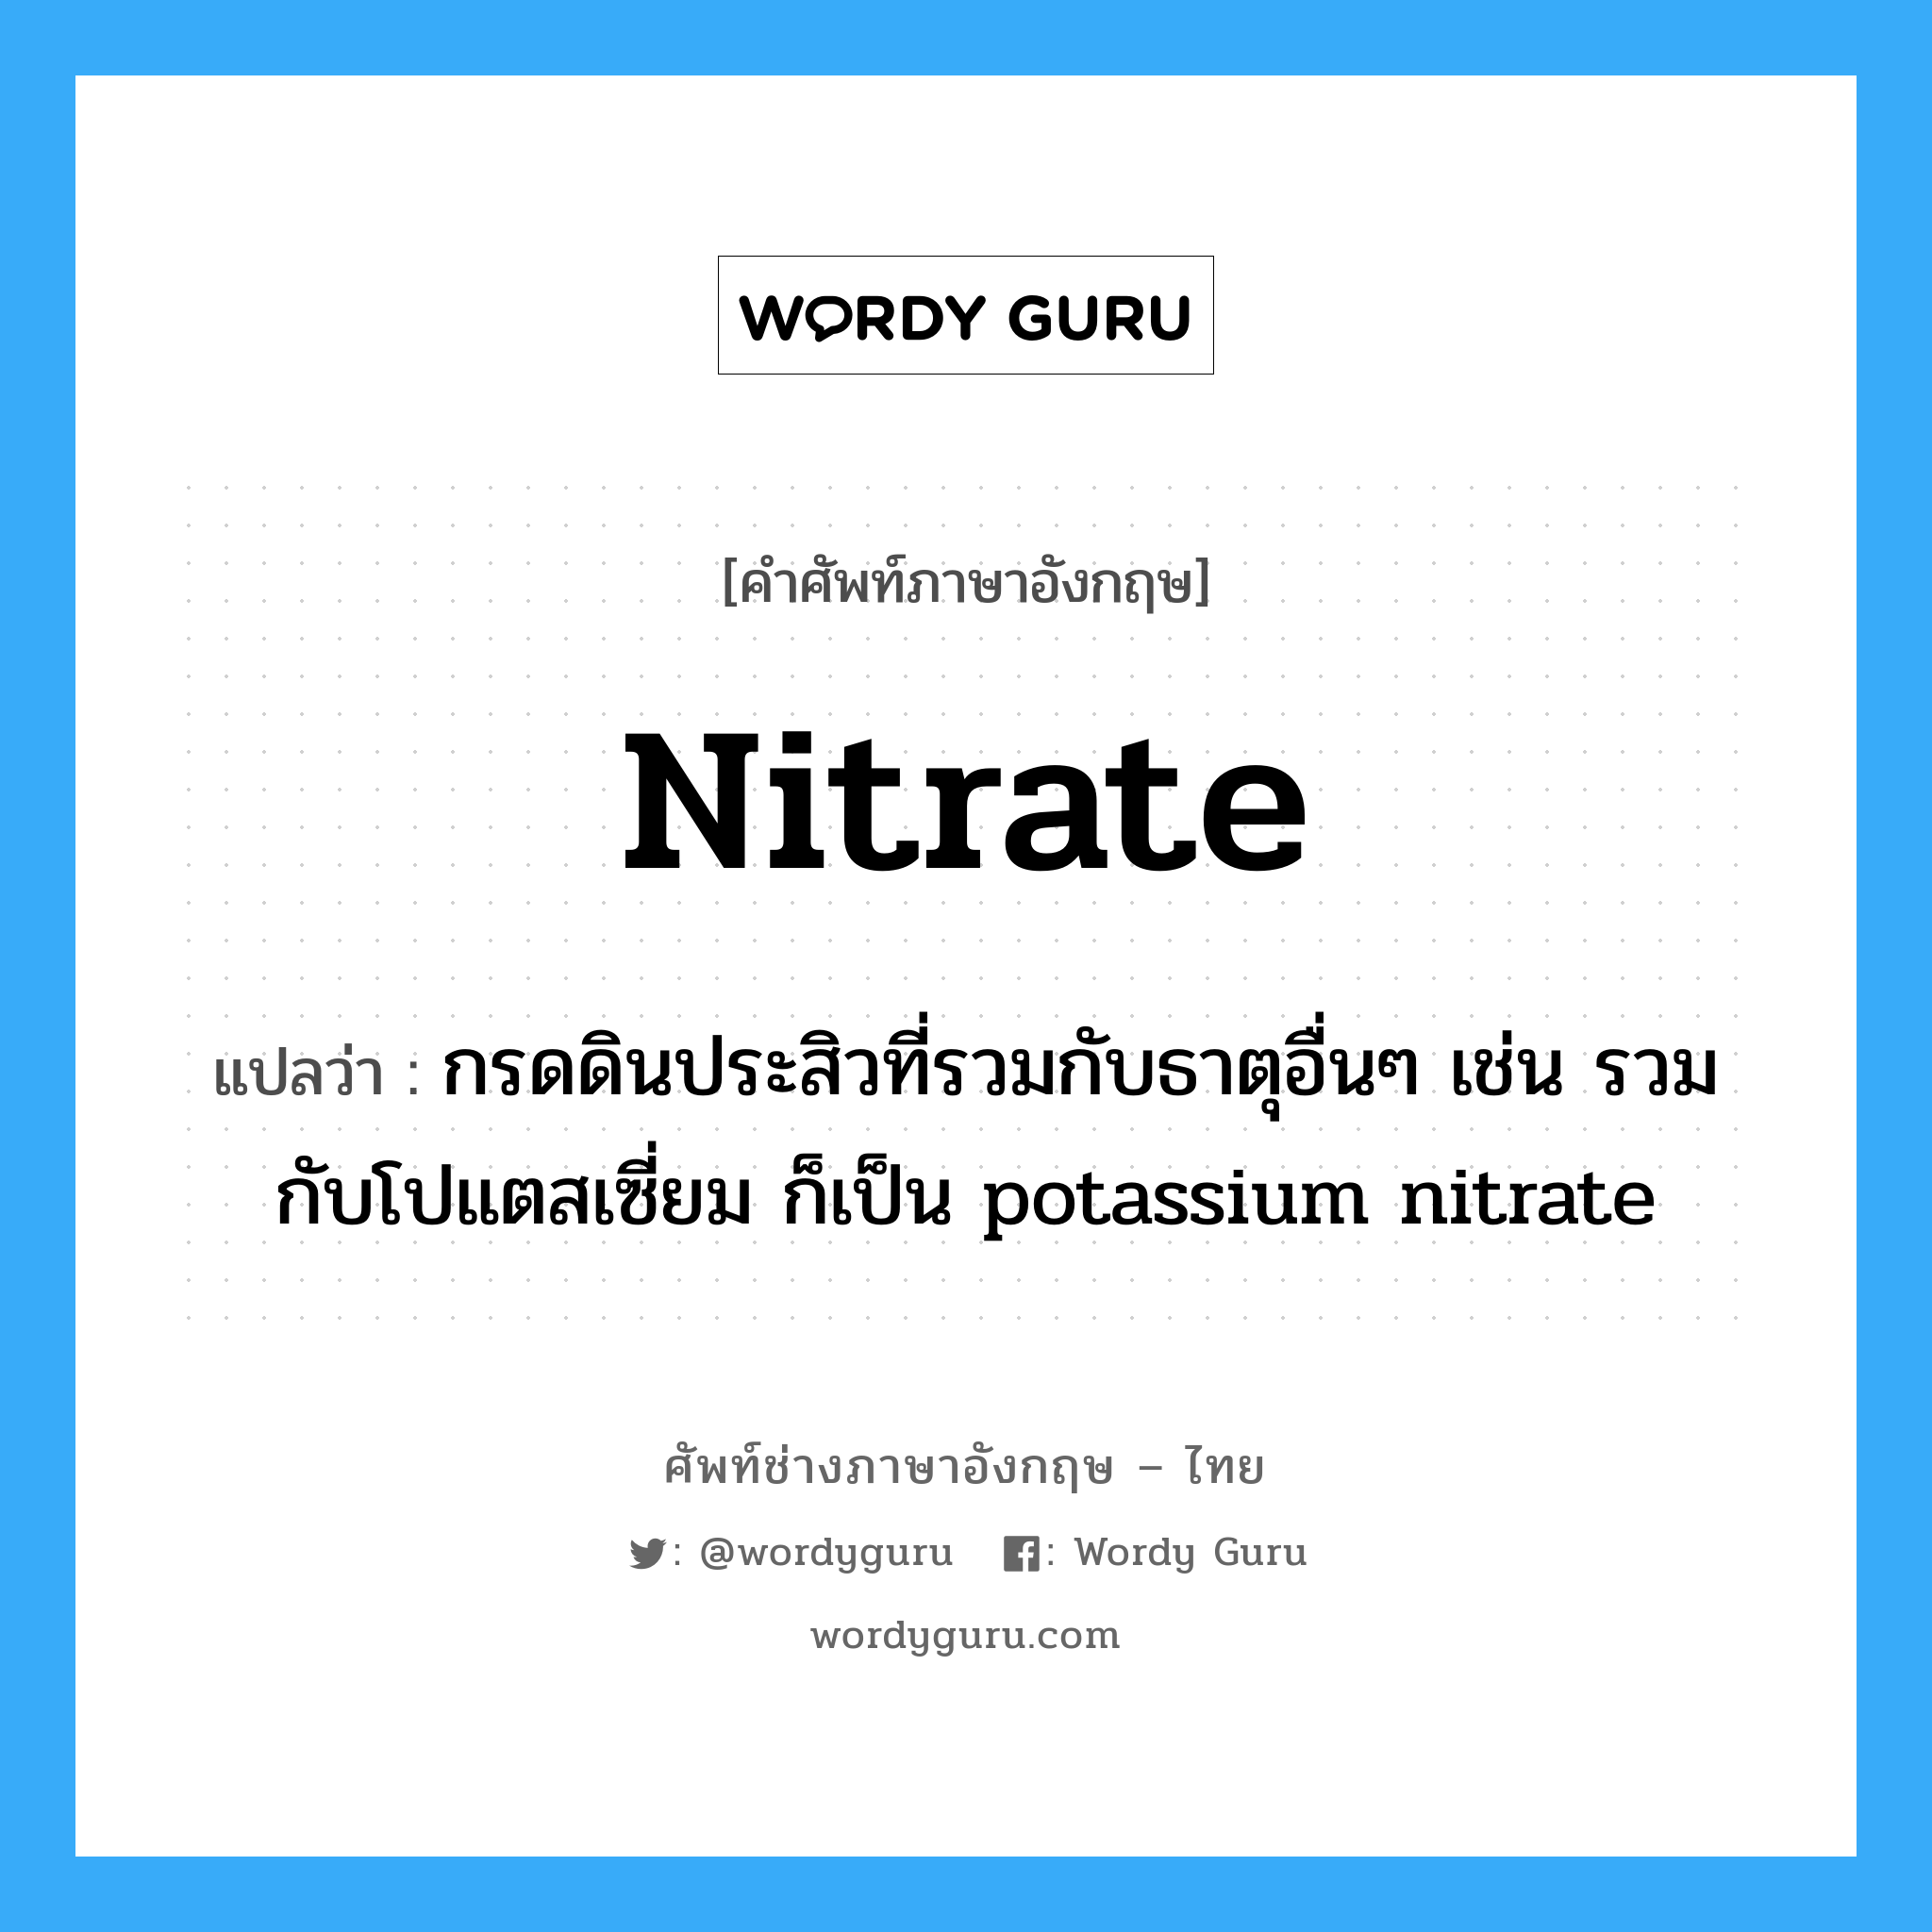 กรดดินประสิวที่รวมกับธาตุอื่นๆ เช่น รวมกับโปแตสเซี่ยม ก็เป็น potassium nitrate ภาษาอังกฤษ?, คำศัพท์ช่างภาษาอังกฤษ - ไทย กรดดินประสิวที่รวมกับธาตุอื่นๆ เช่น รวมกับโปแตสเซี่ยม ก็เป็น potassium nitrate คำศัพท์ภาษาอังกฤษ กรดดินประสิวที่รวมกับธาตุอื่นๆ เช่น รวมกับโปแตสเซี่ยม ก็เป็น potassium nitrate แปลว่า nitrate